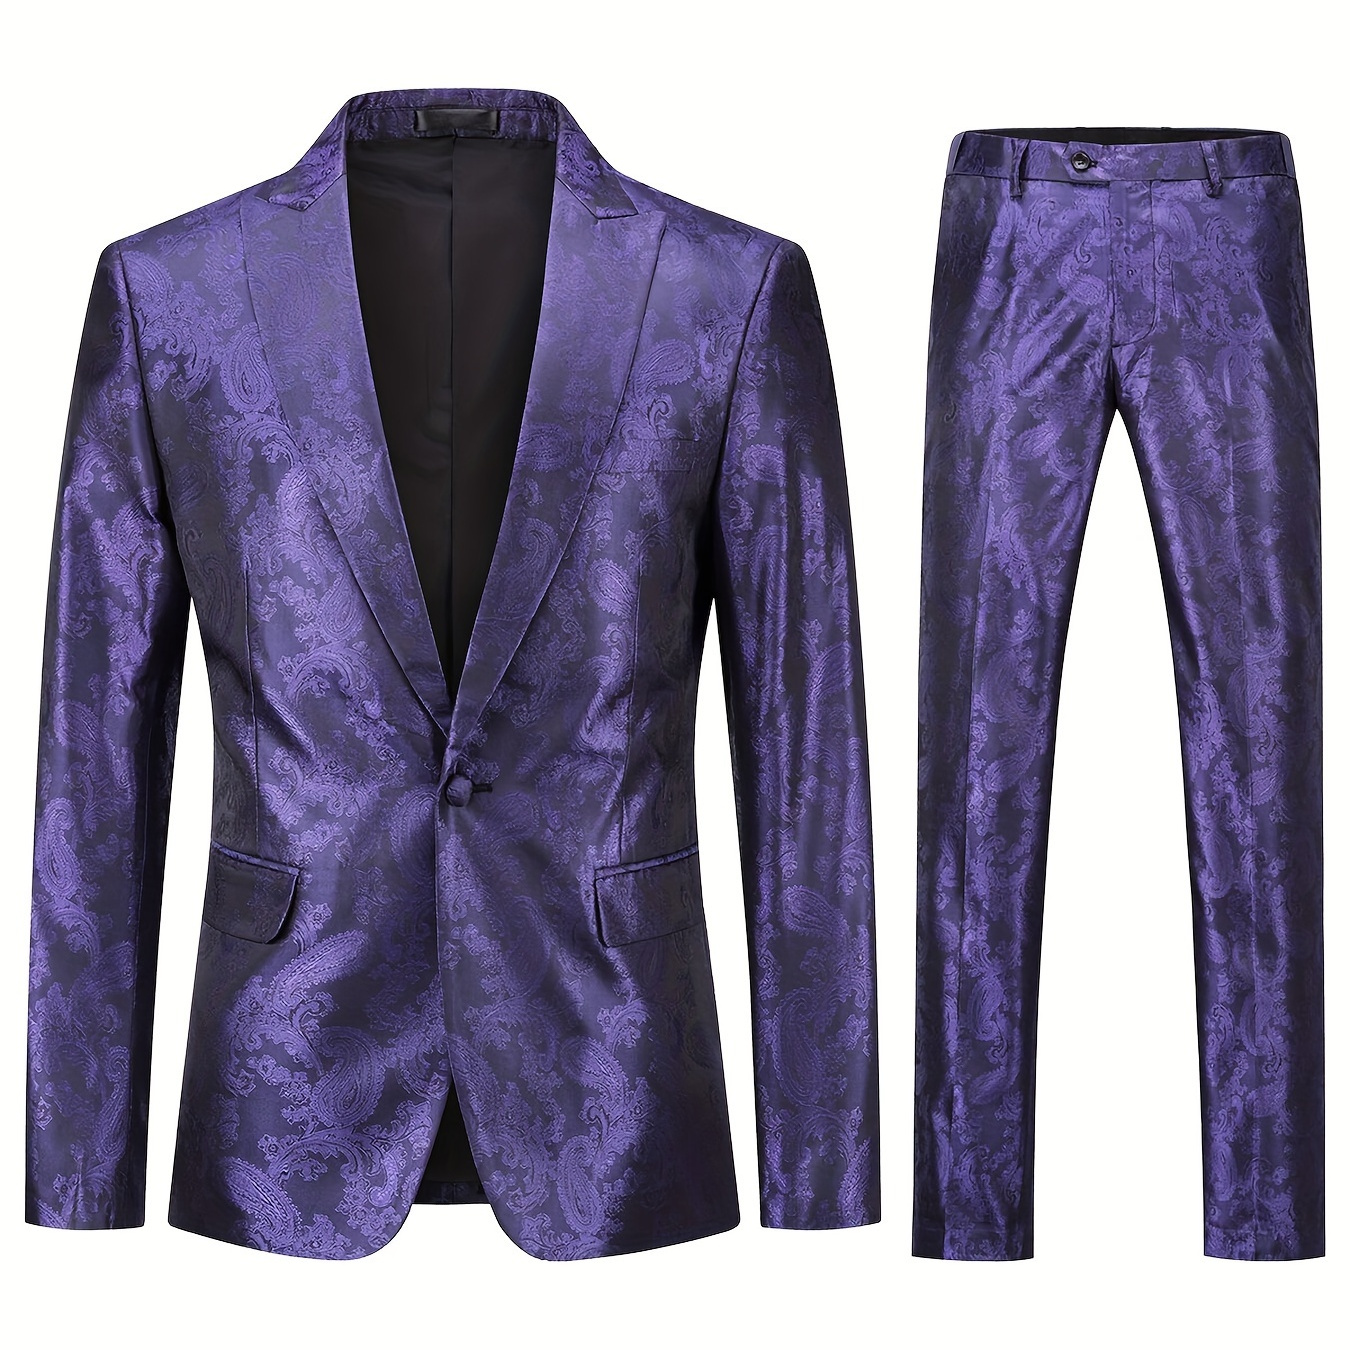 

Formal 2 Pieces Set, Men's 1 Button Jacquard Suit Jacket & Dress Pants Suit Set For Business Dinner Wedding Party